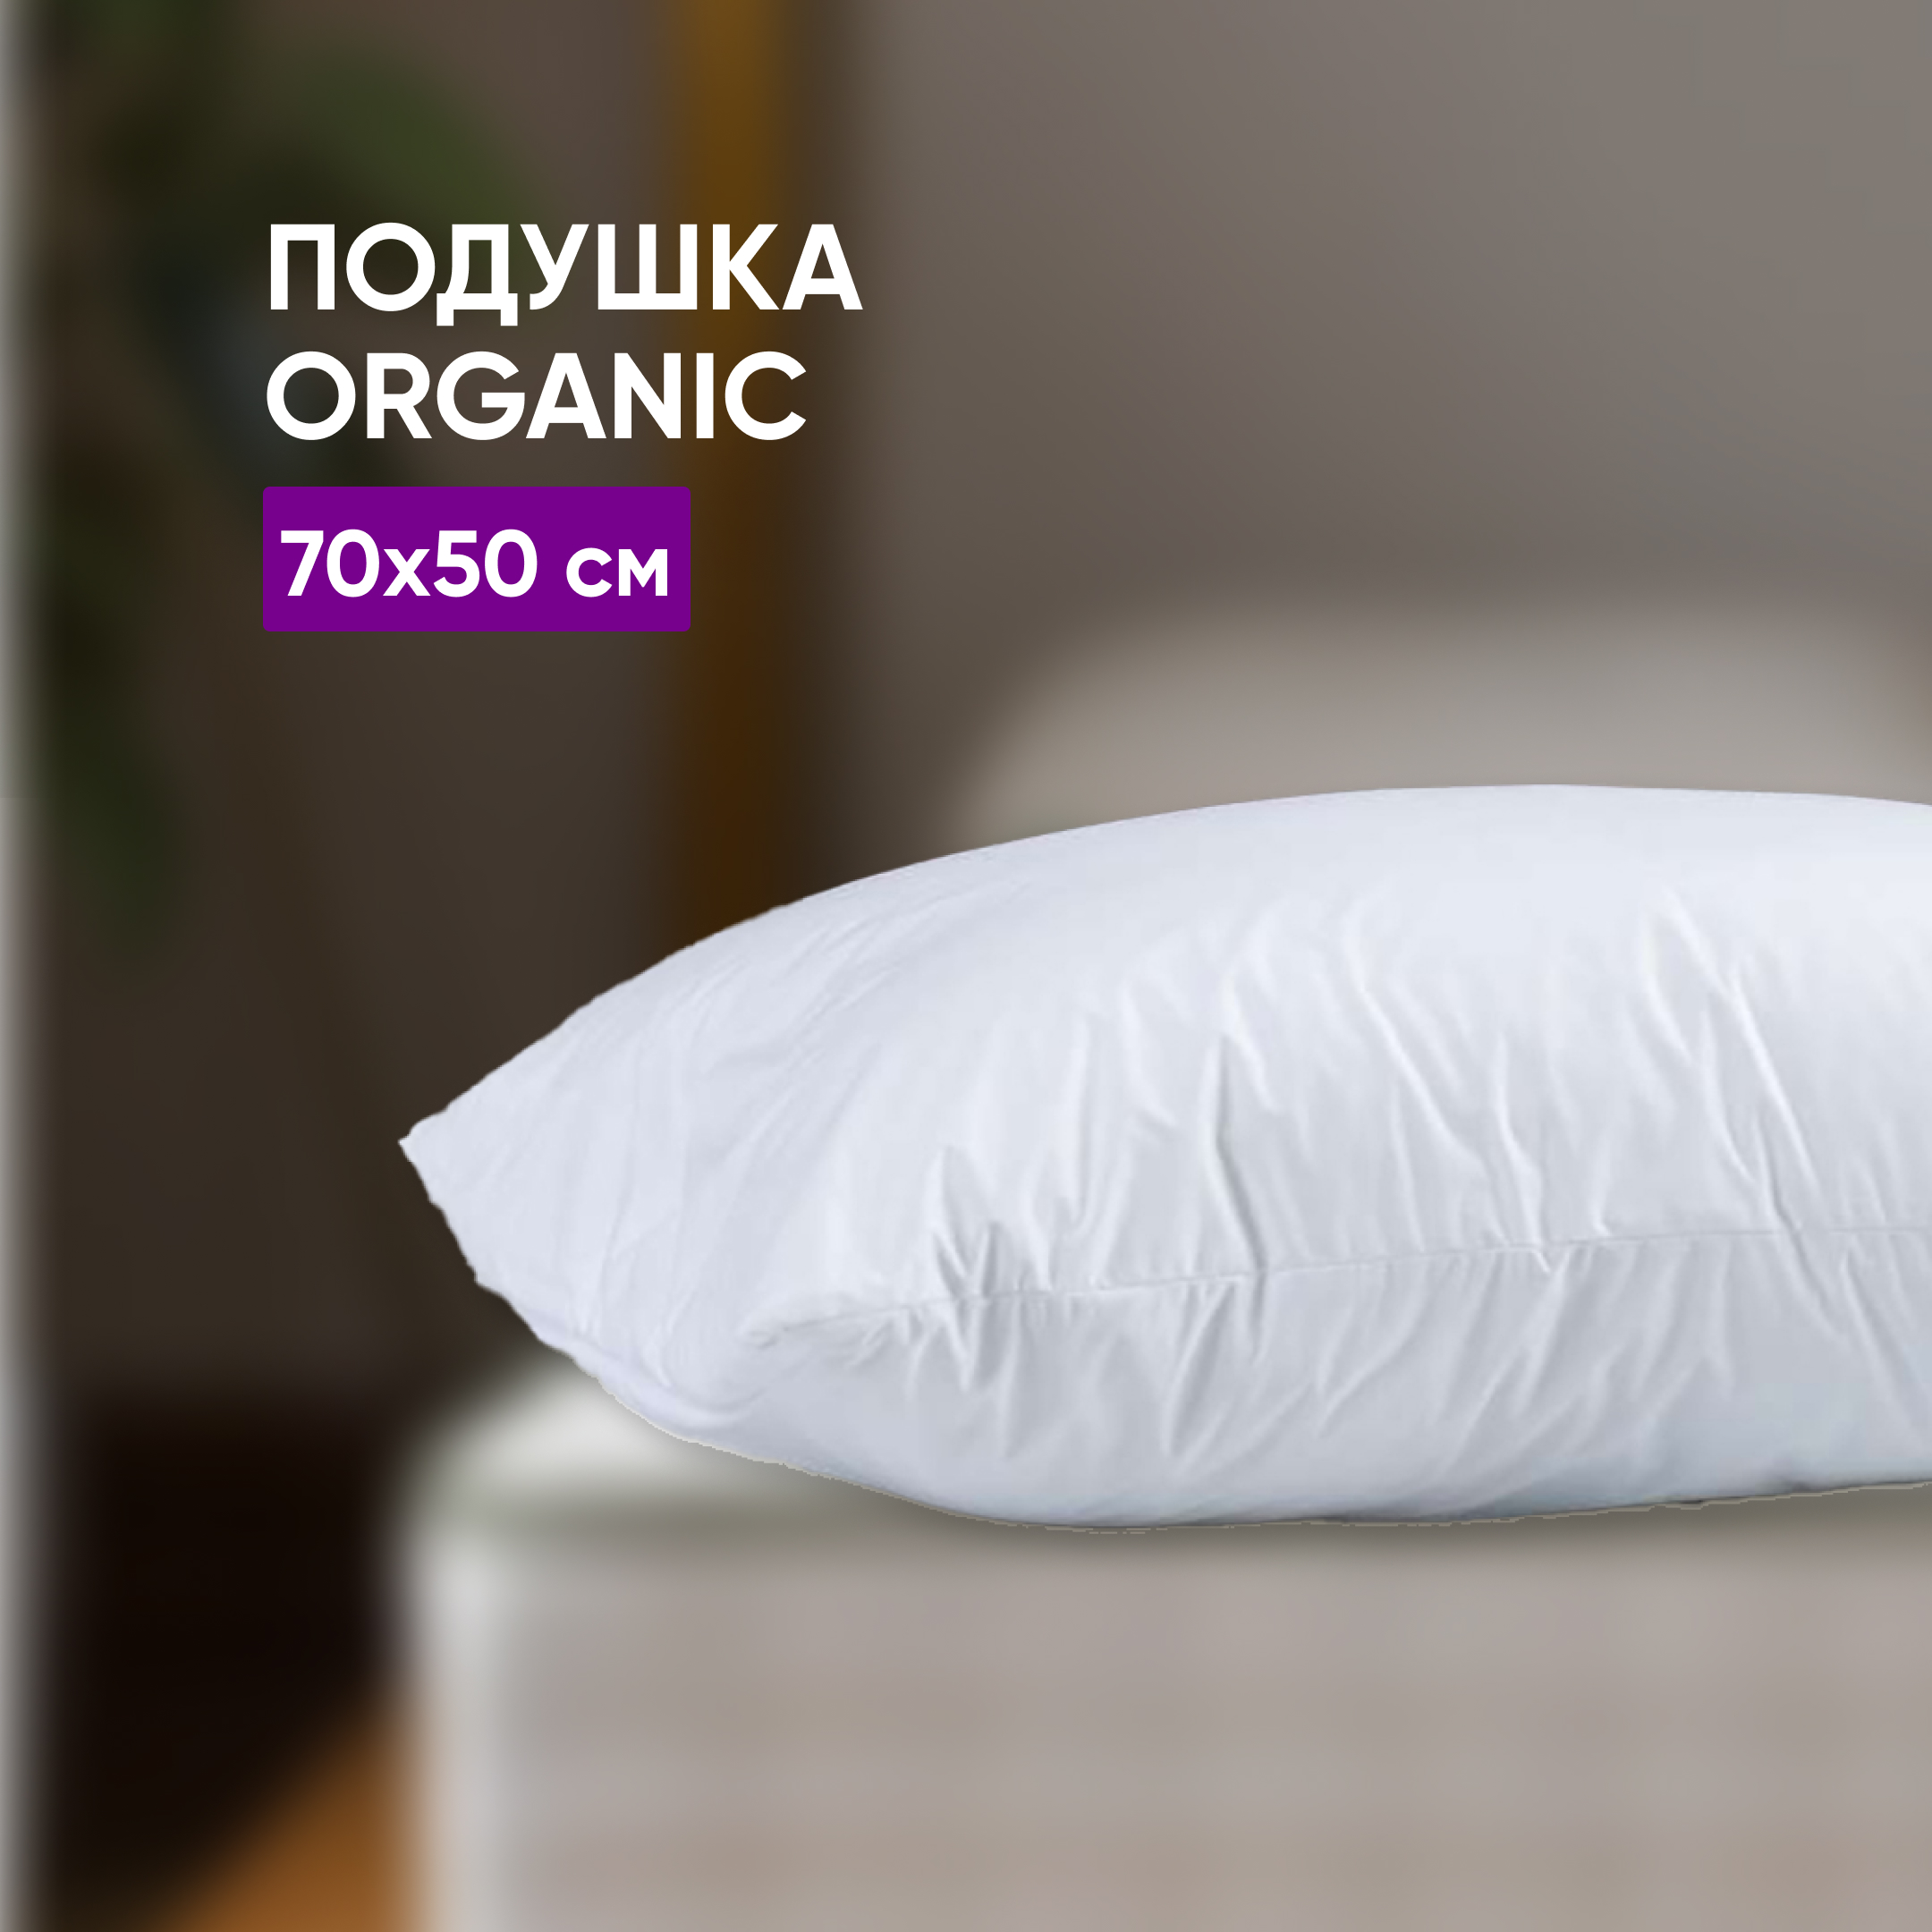 Подушка Organic 70х50